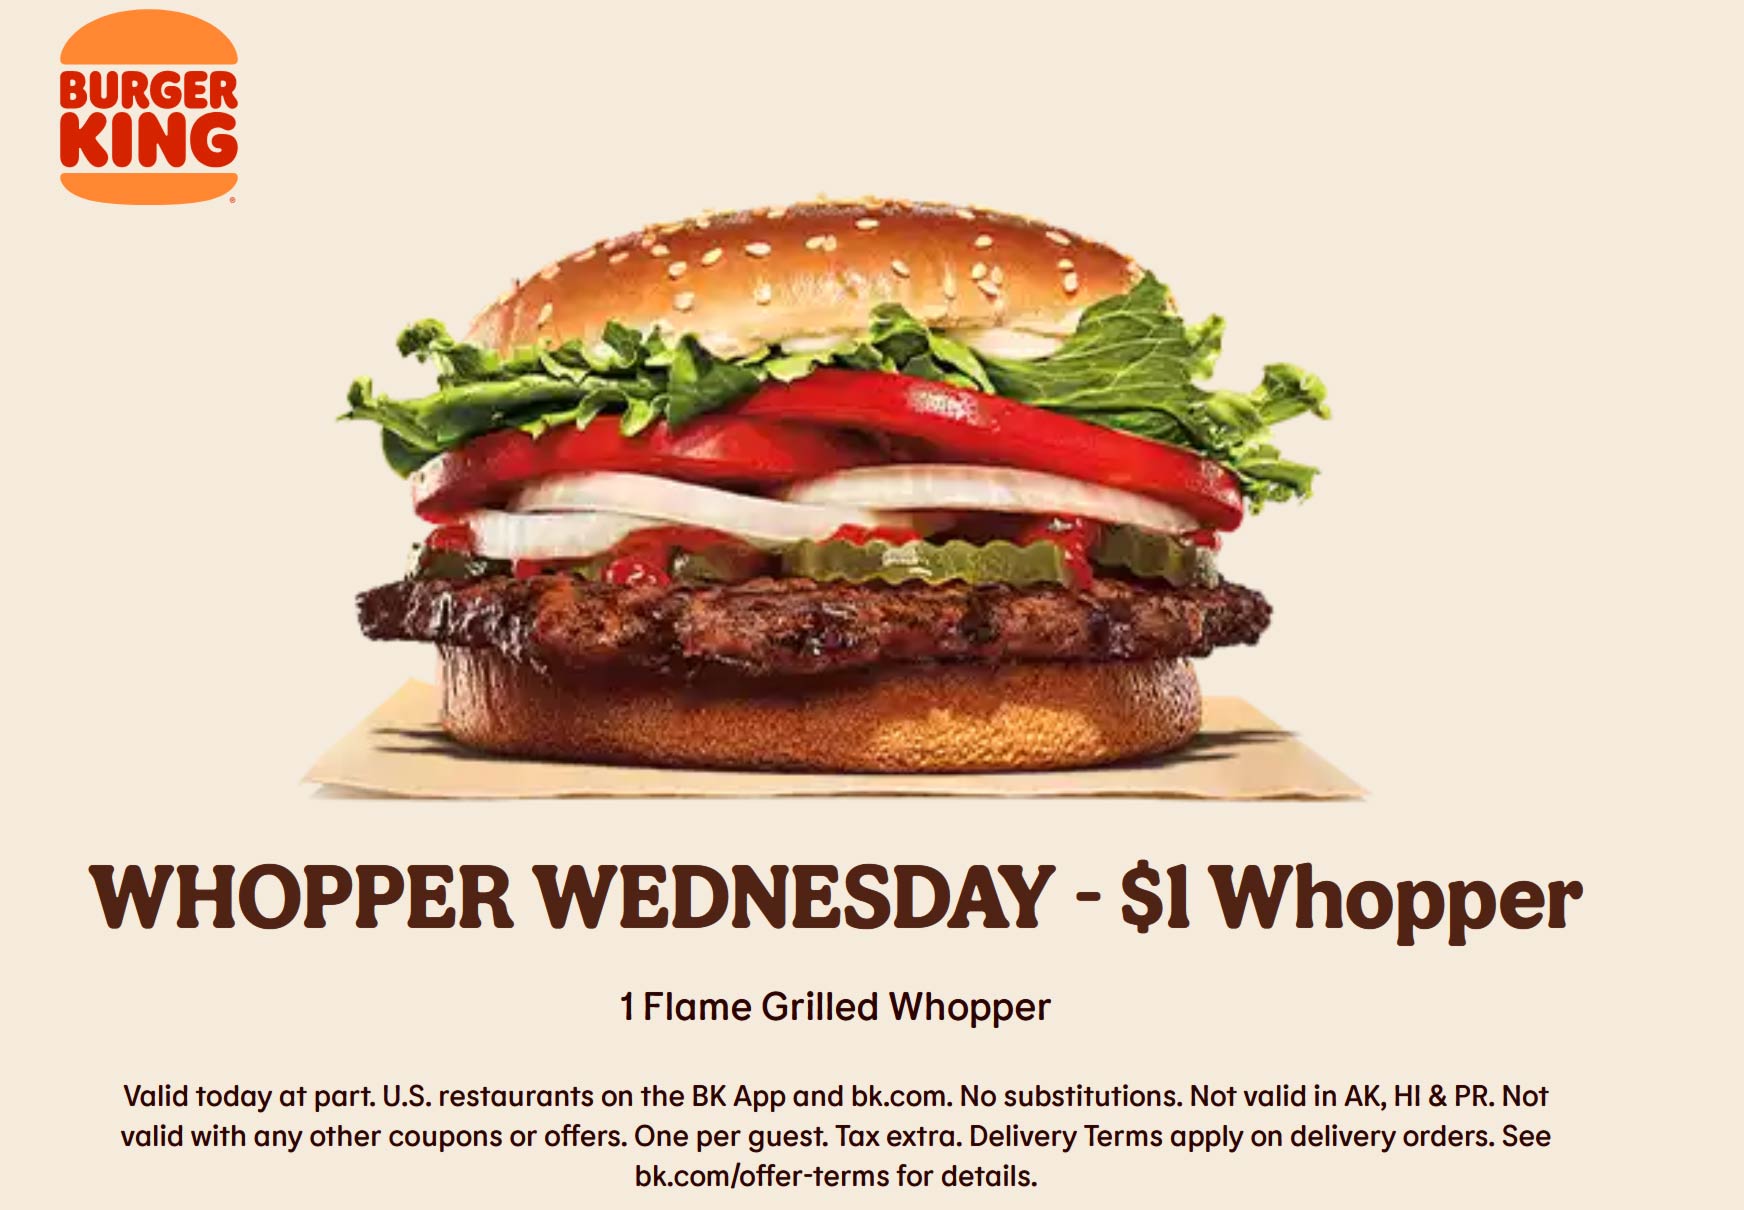 Burger King restaurants Coupon  $1 whopper hamburger today online at Burger King #burgerking 